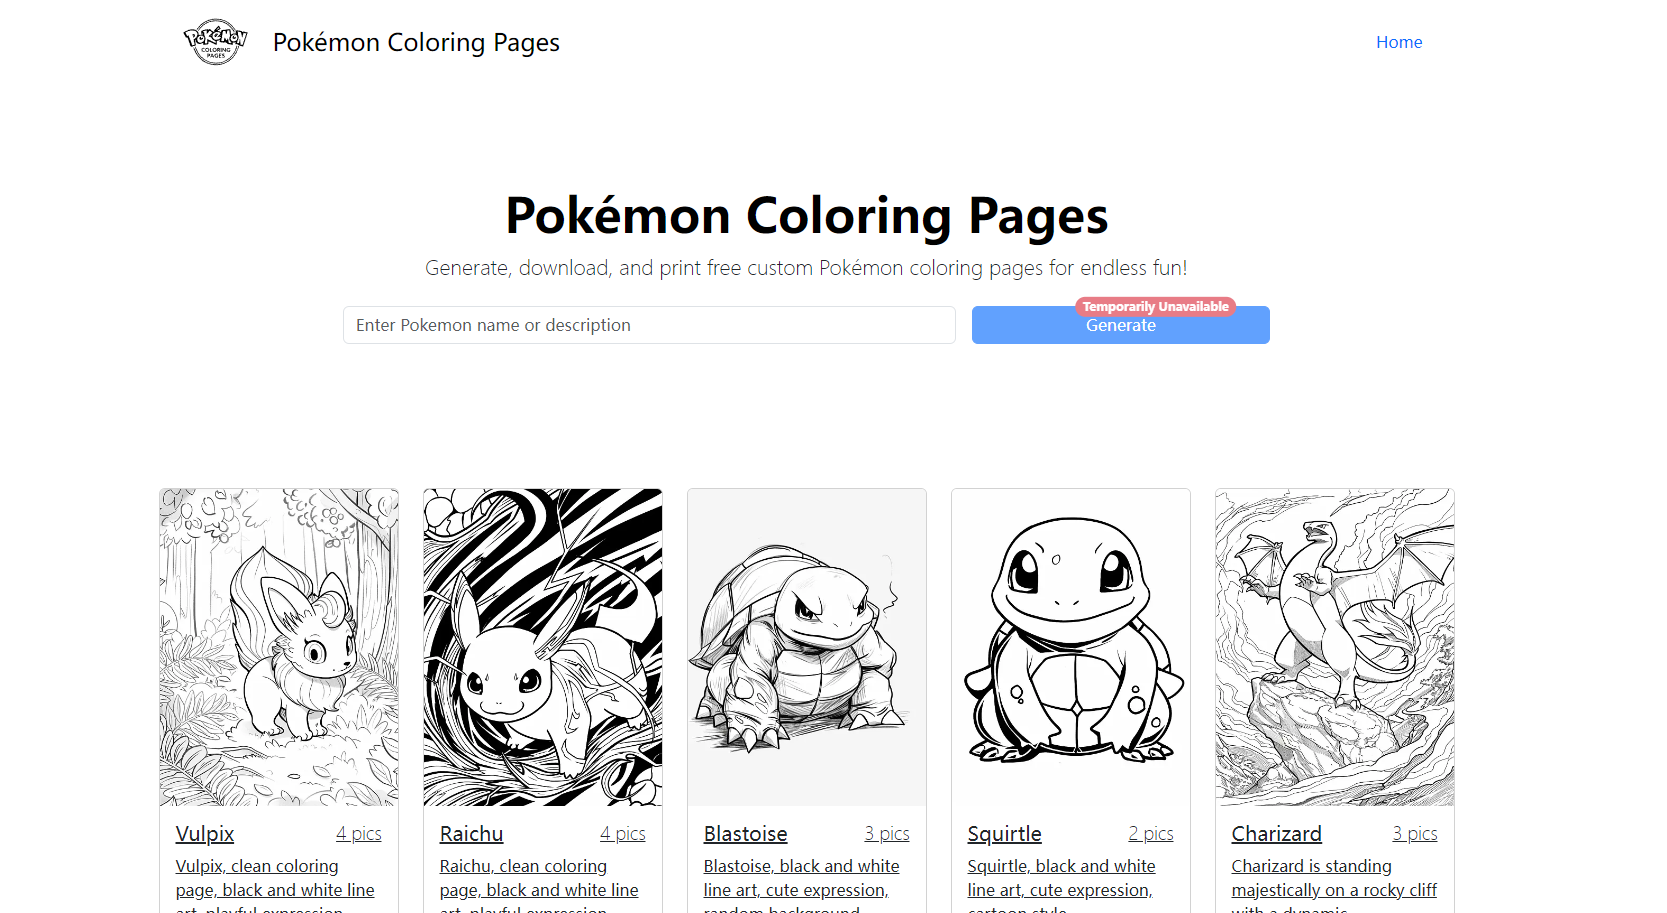 
Pokémon Coloring Pages
